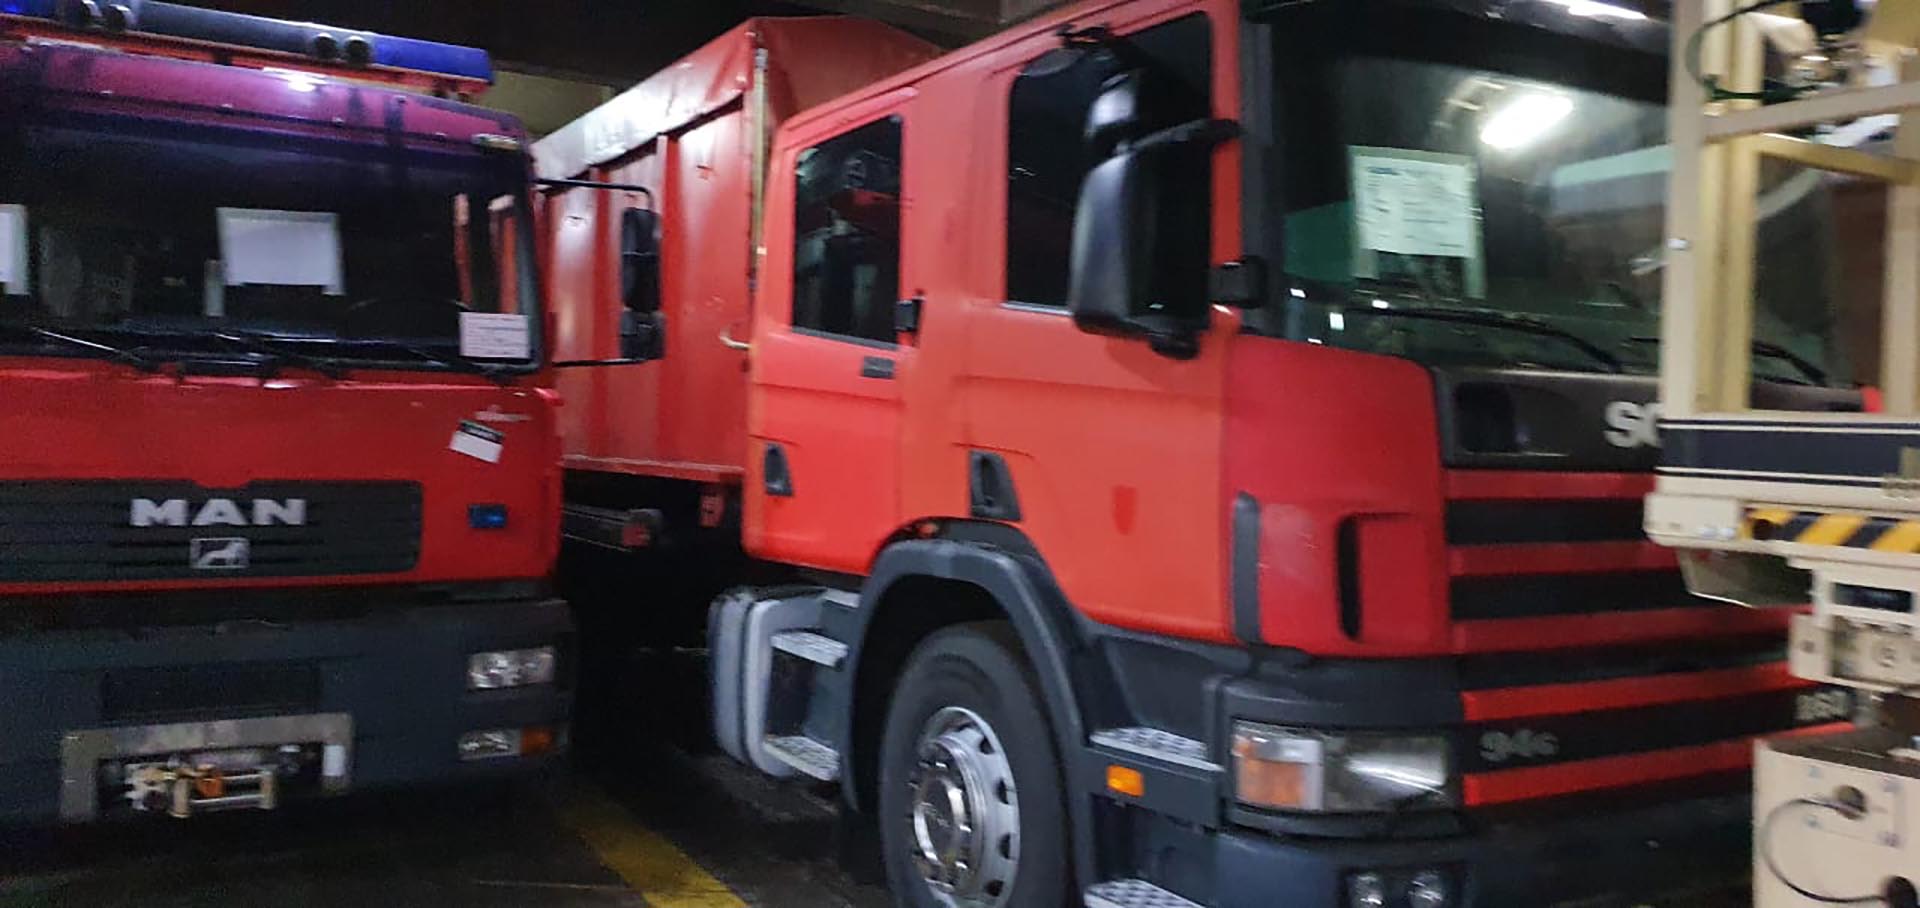 El camión de bomberos en que casi accidentalmente un can aduanero y su guarda detectaron 56 kilos de cocaína, probablemente porque la operación de narcotráfico equivocó el vehículo de carga